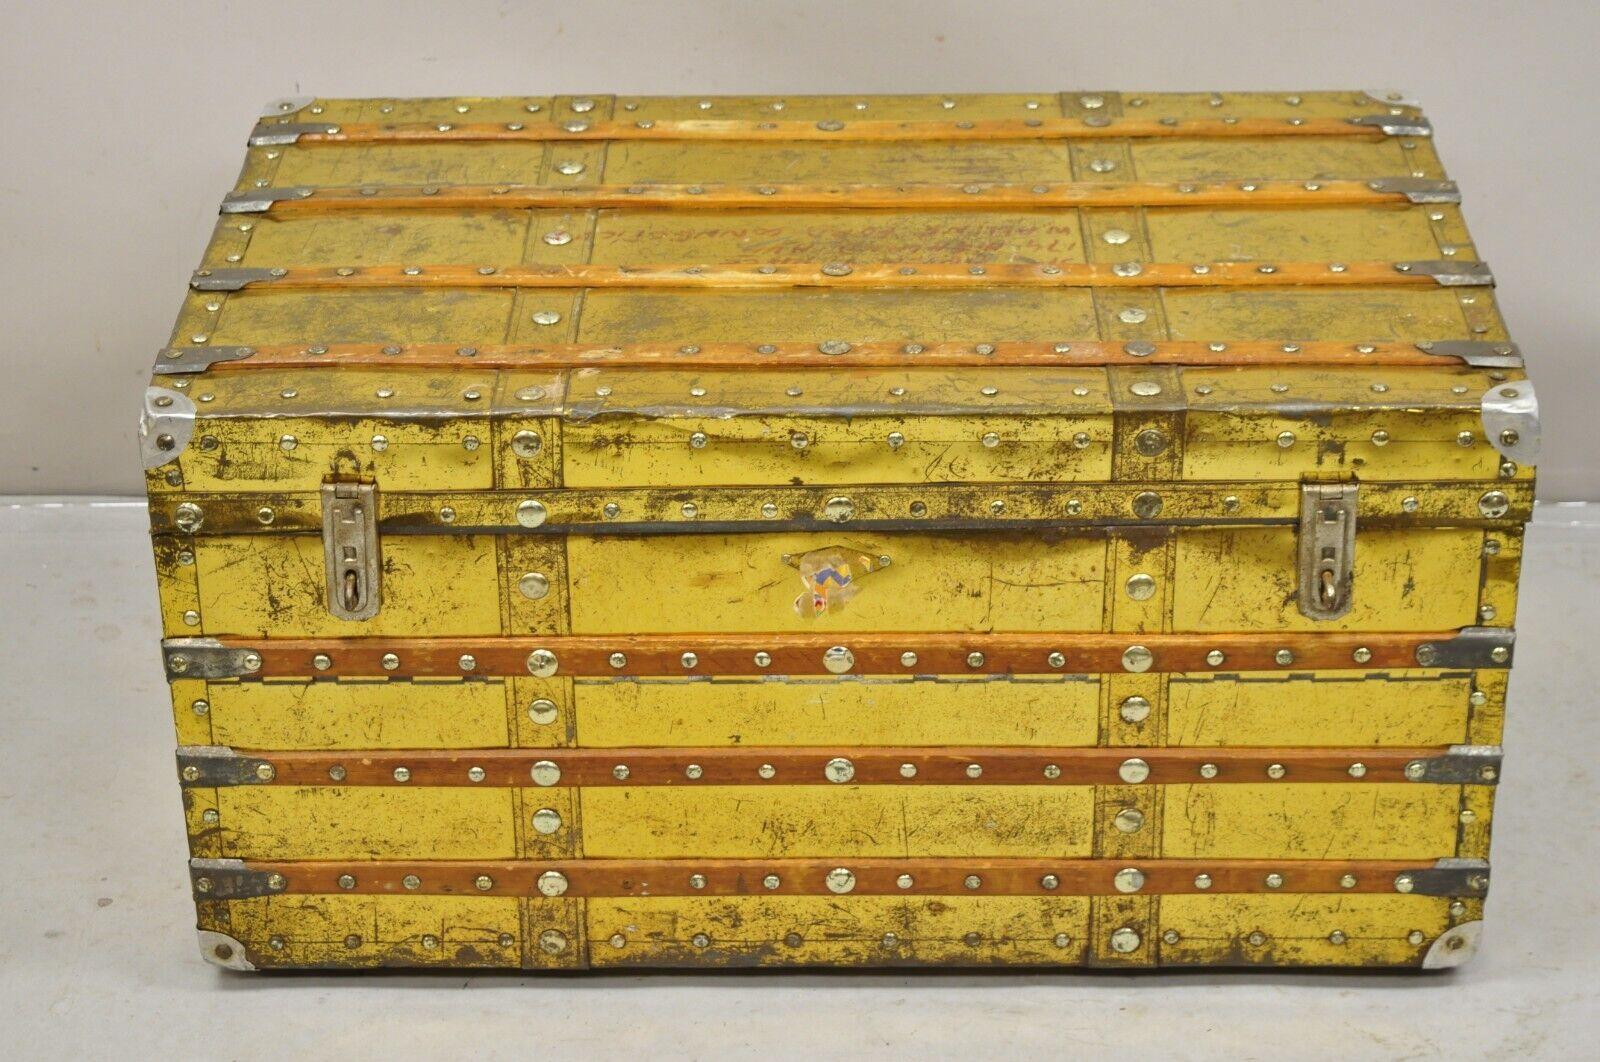 Antike viktorianische Messing verkleidet hölzerne Band Zug Trunk Storage Treasure Chest. Um 1900. Abmessungen: 18,5